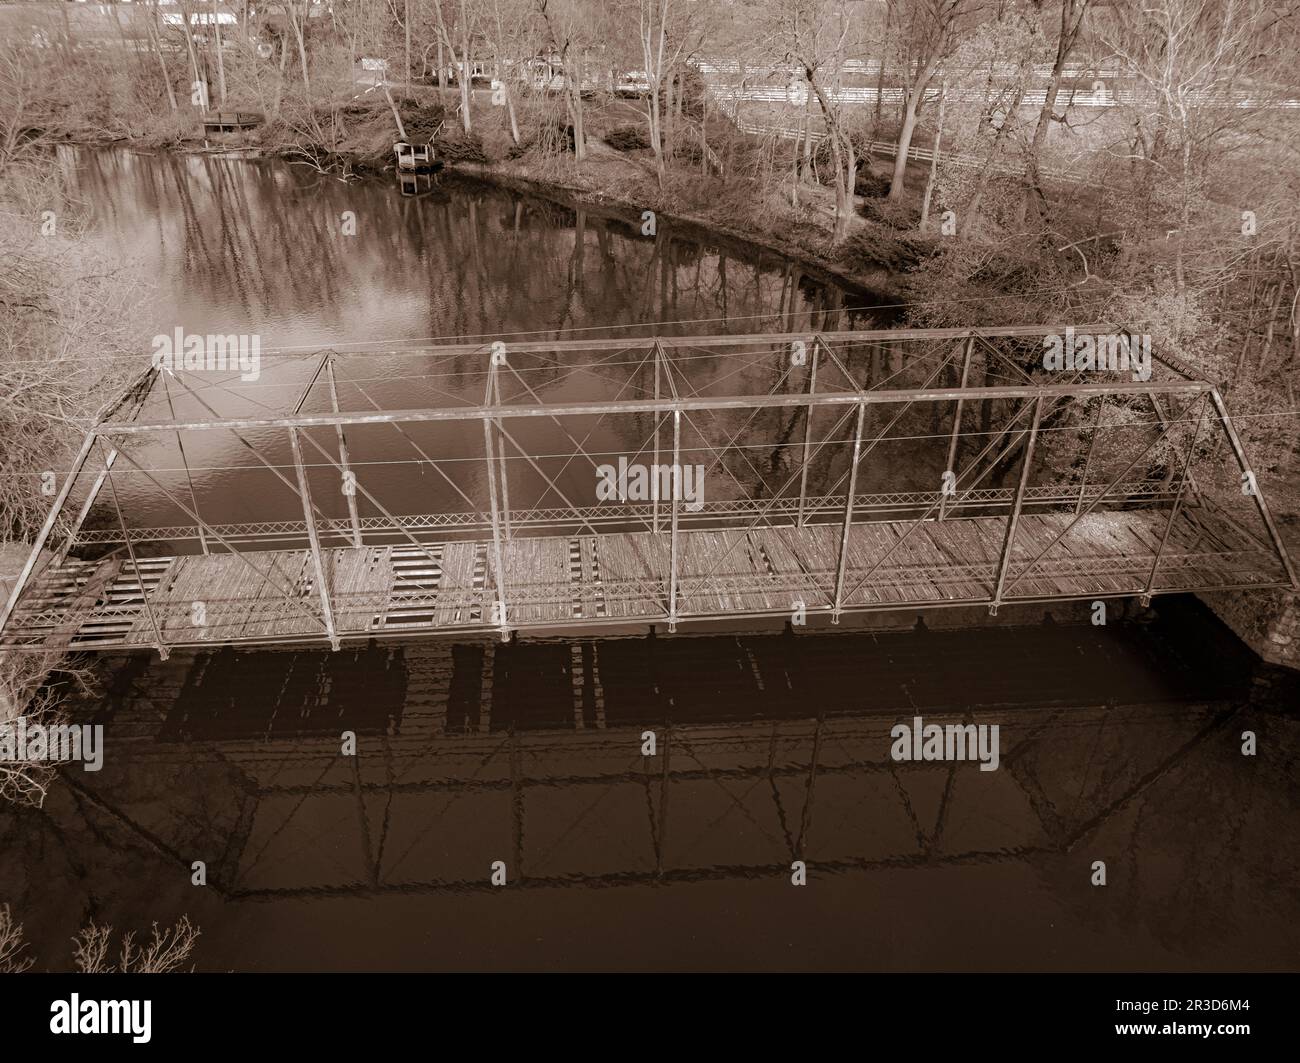 Eine Reise durch die Zeit in Sepiatönen: Eine alternde Brücke über einen ruhigen Fluss, umgeben von warmen Farbtönen, ruft Nostalgie und ein zeitloses Gefühl der Geschichte hervor. Stockfoto